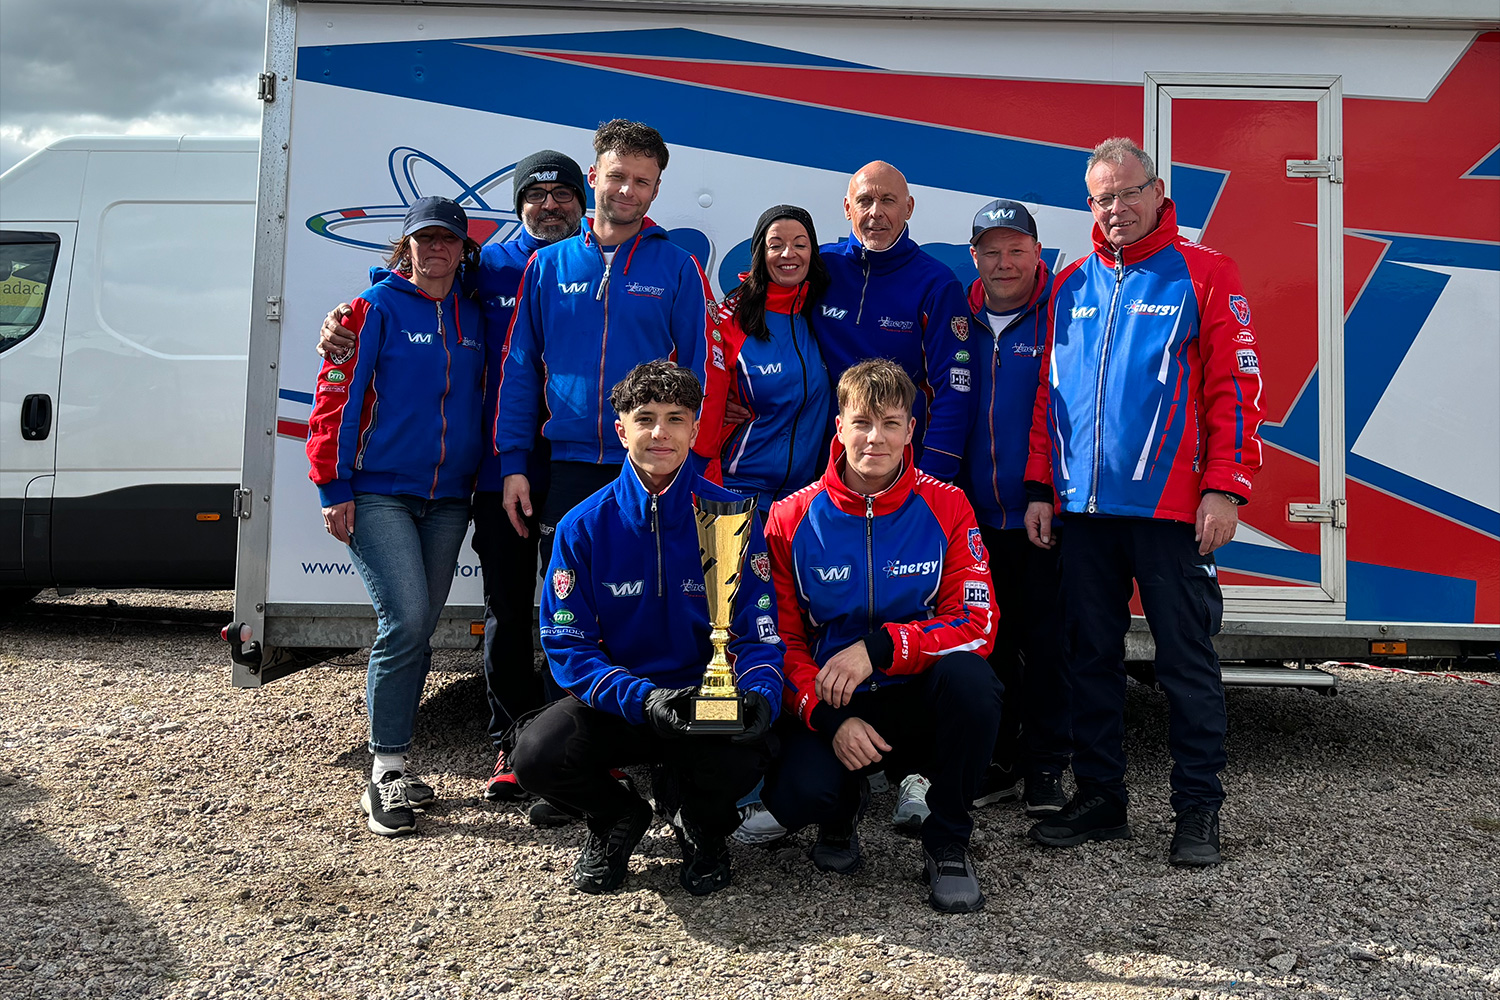 Valier Motorsport startet mit Top-Fünf-Rang in DKM-Saison